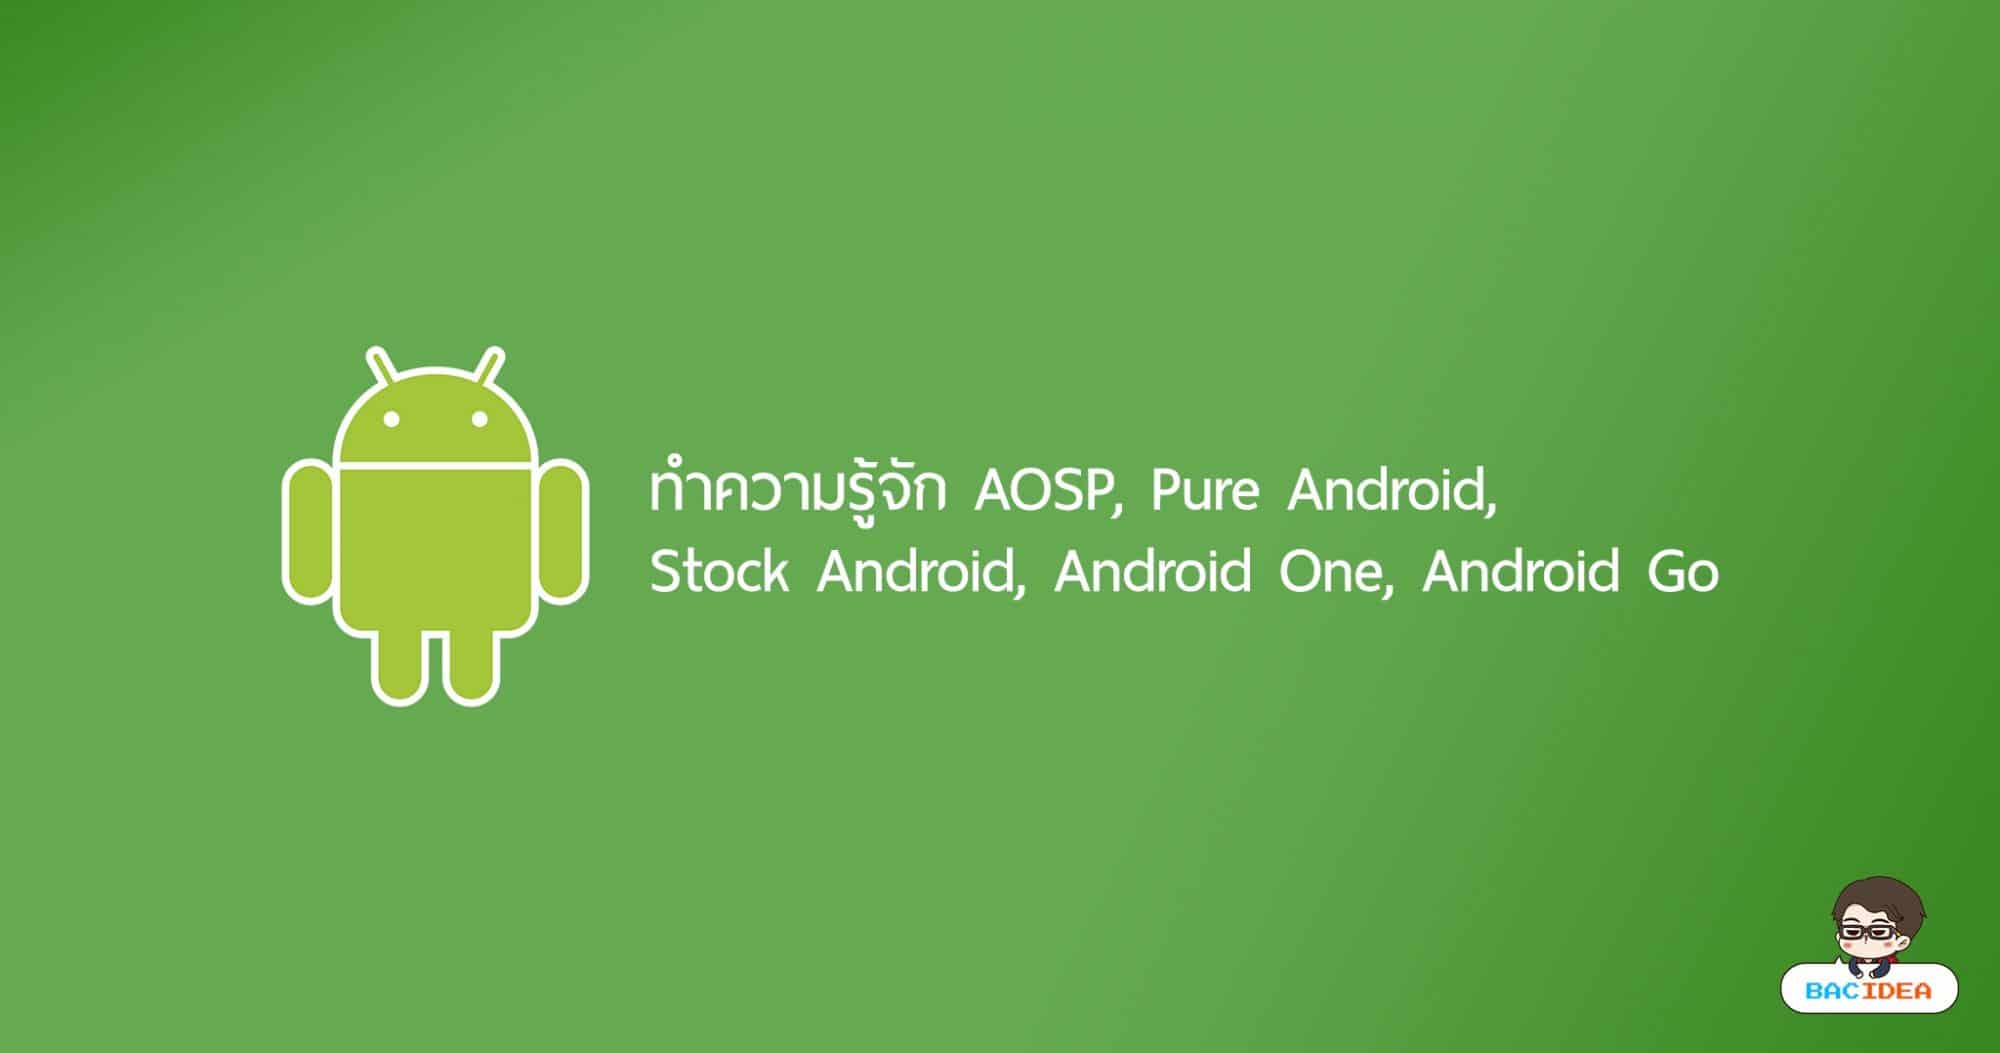 ทำความรู้จัก AOSP, Pure Android, Stock Android, Android One, Android Go 1